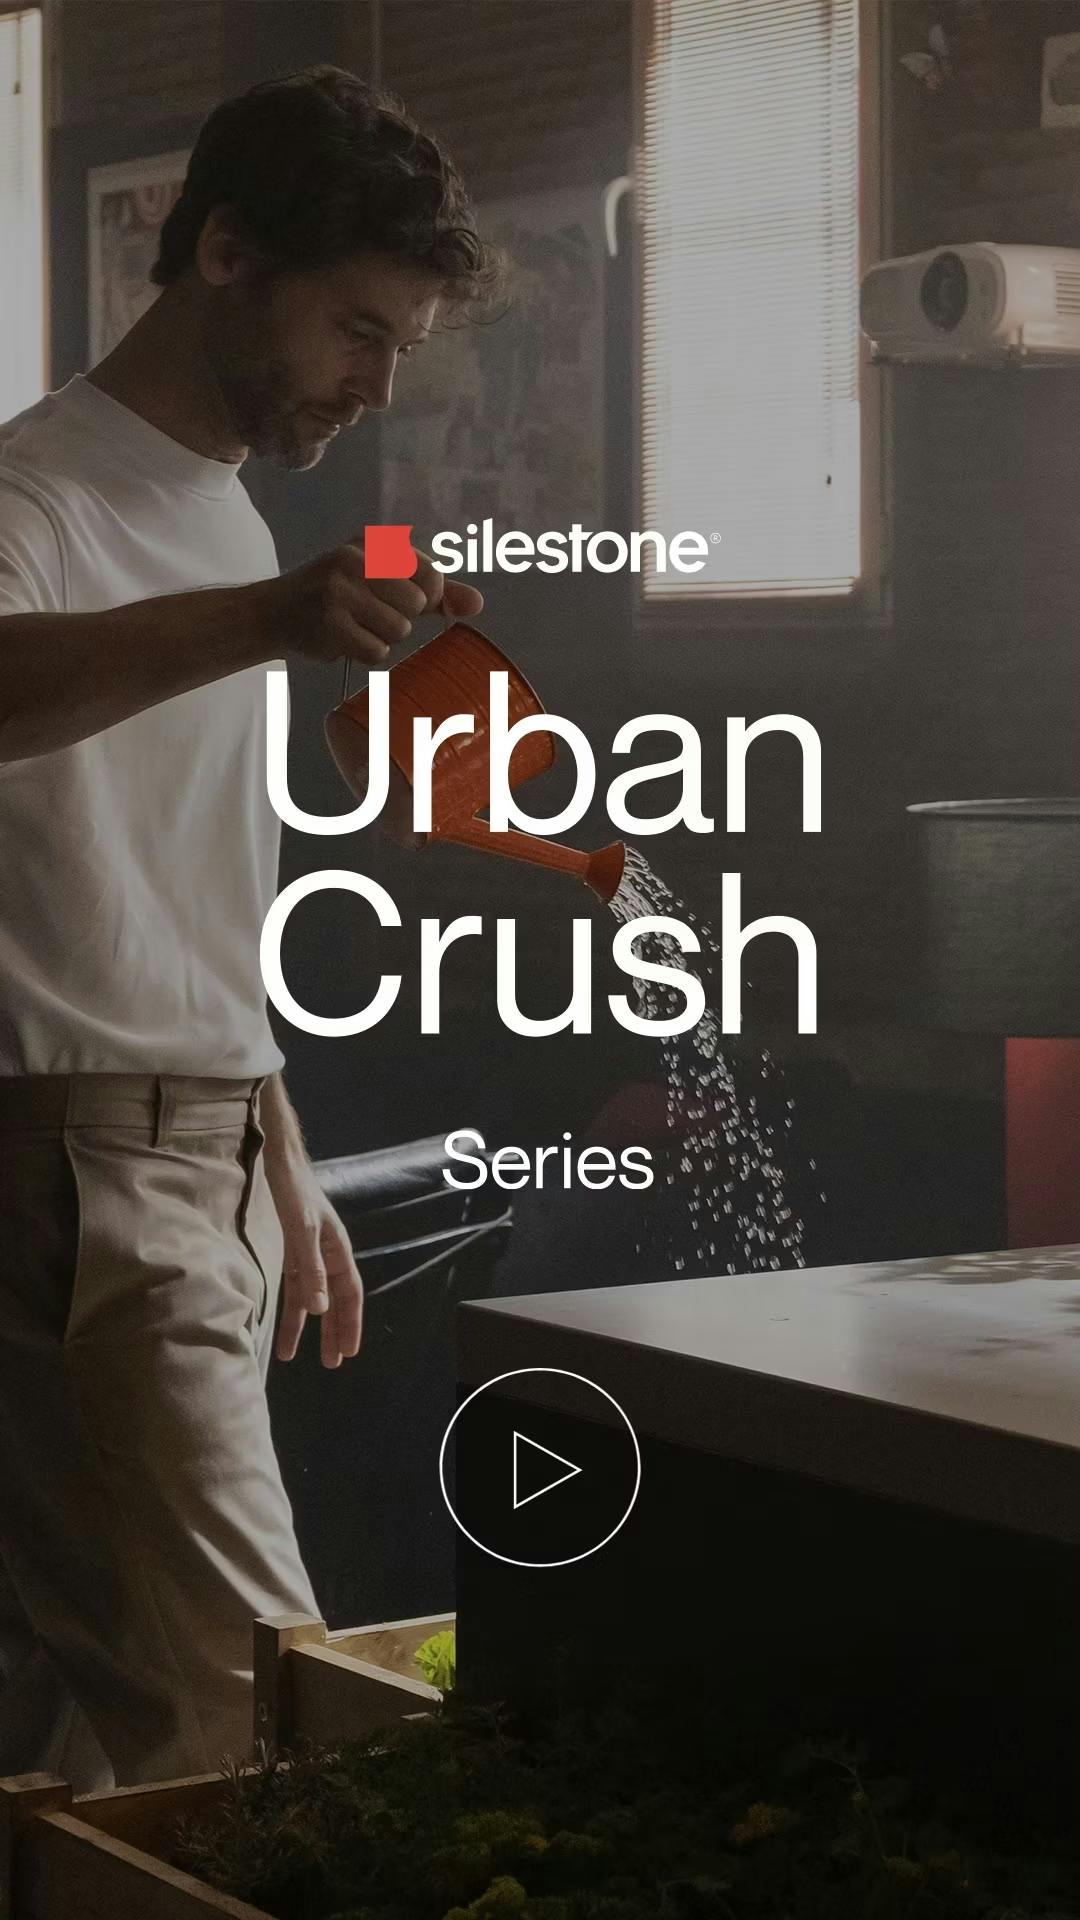 Numero immagine 34 della sezione corrente di Silestone Urban Crush di Cosentino Italia